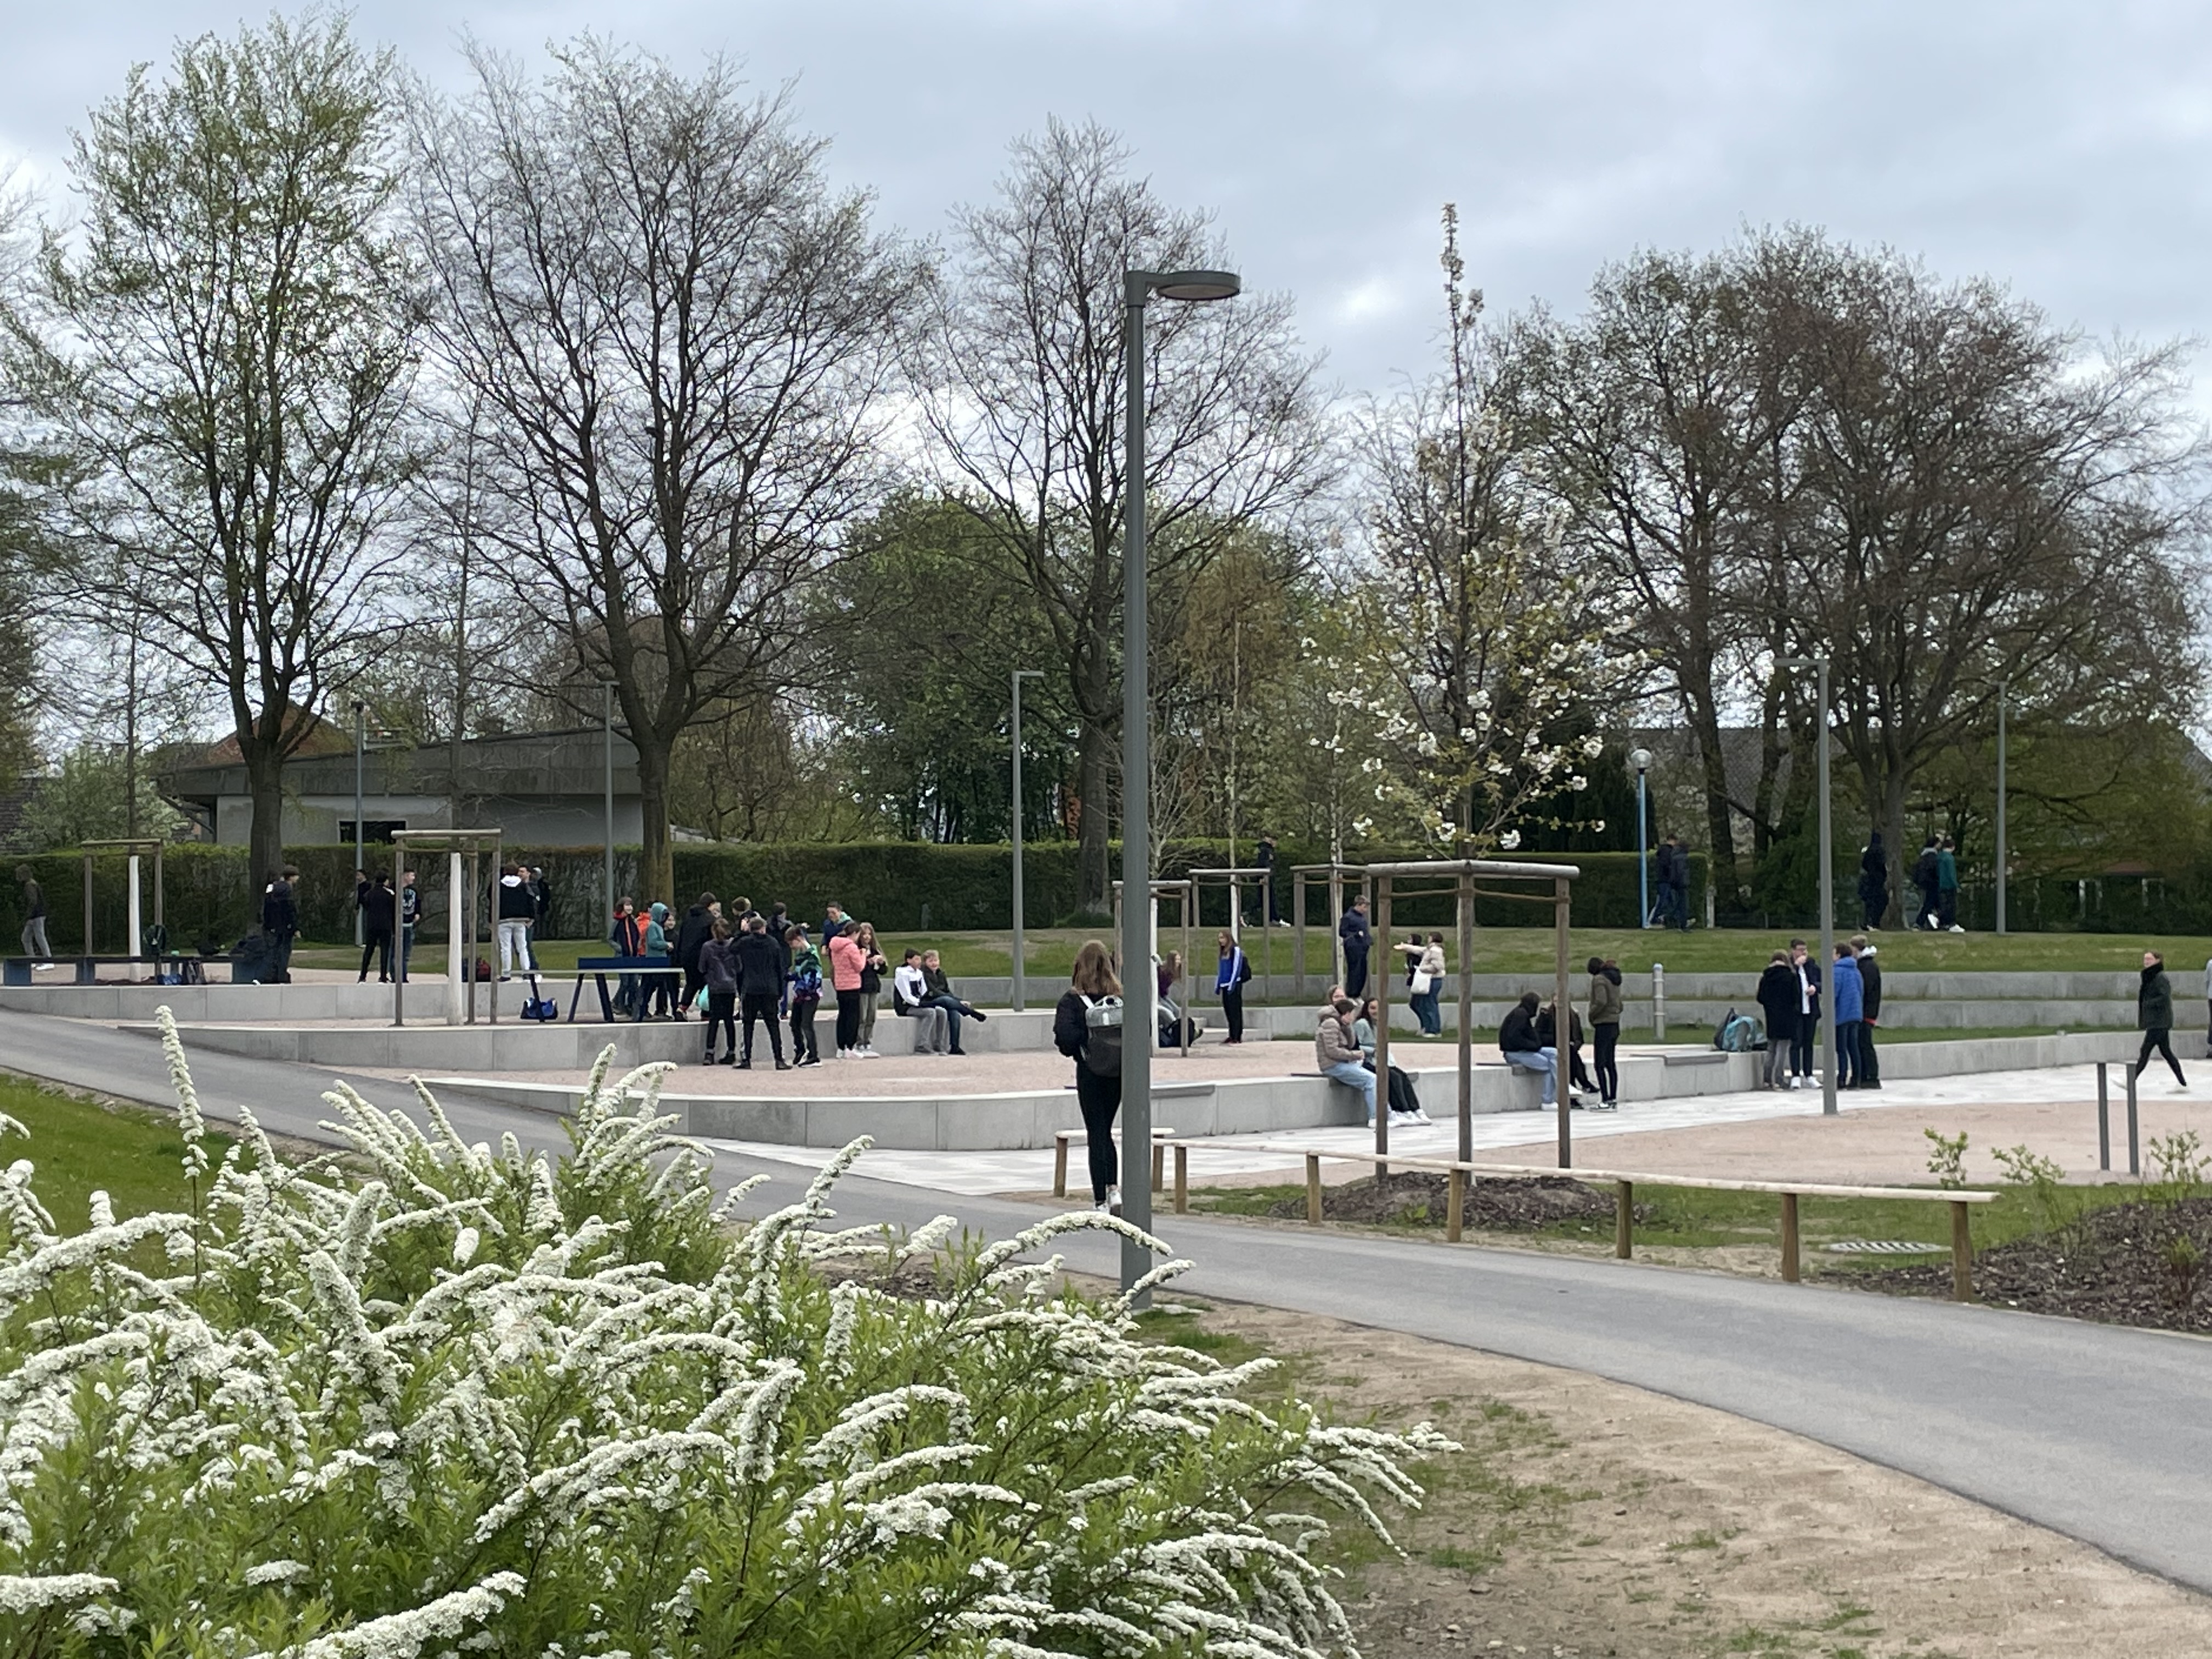 Bild vergrößern: In dem Bild ist ein Ausschnitt des Schulhofes der Schule am Burgfeld zu sehen, wo sich einige Gruppen von Schüler aufhalten.